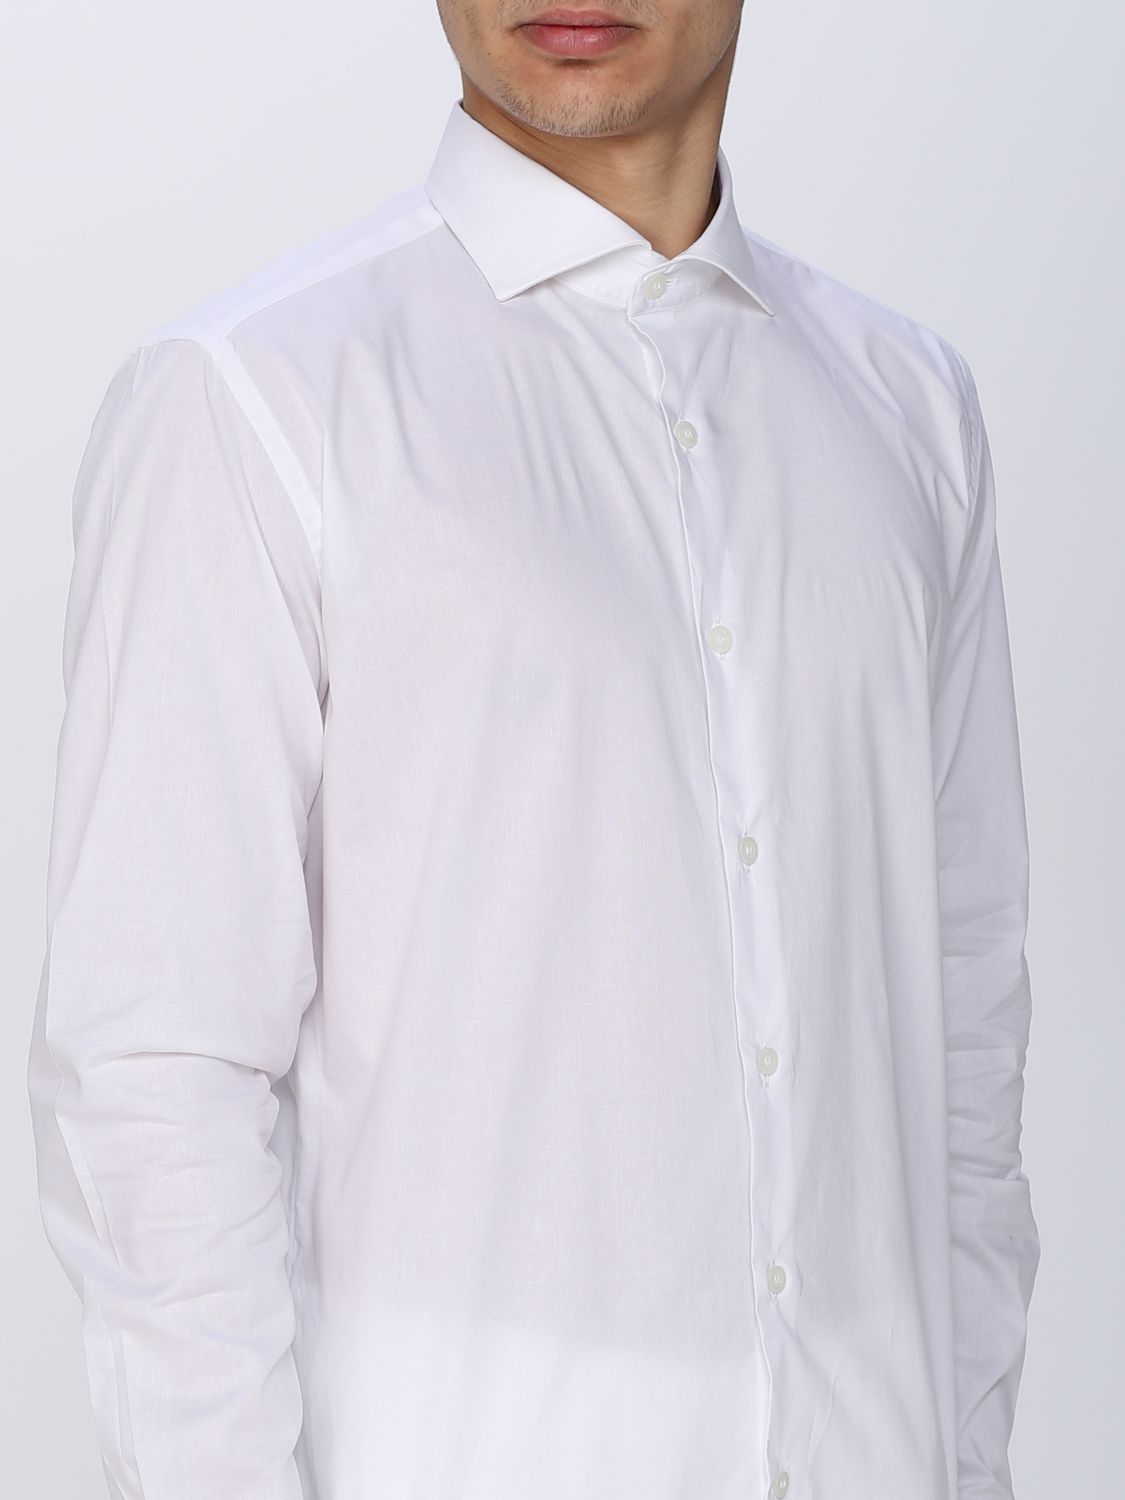 Shirt Daniele Alessandrini: Daniele Alessandrini shirt for men white 3